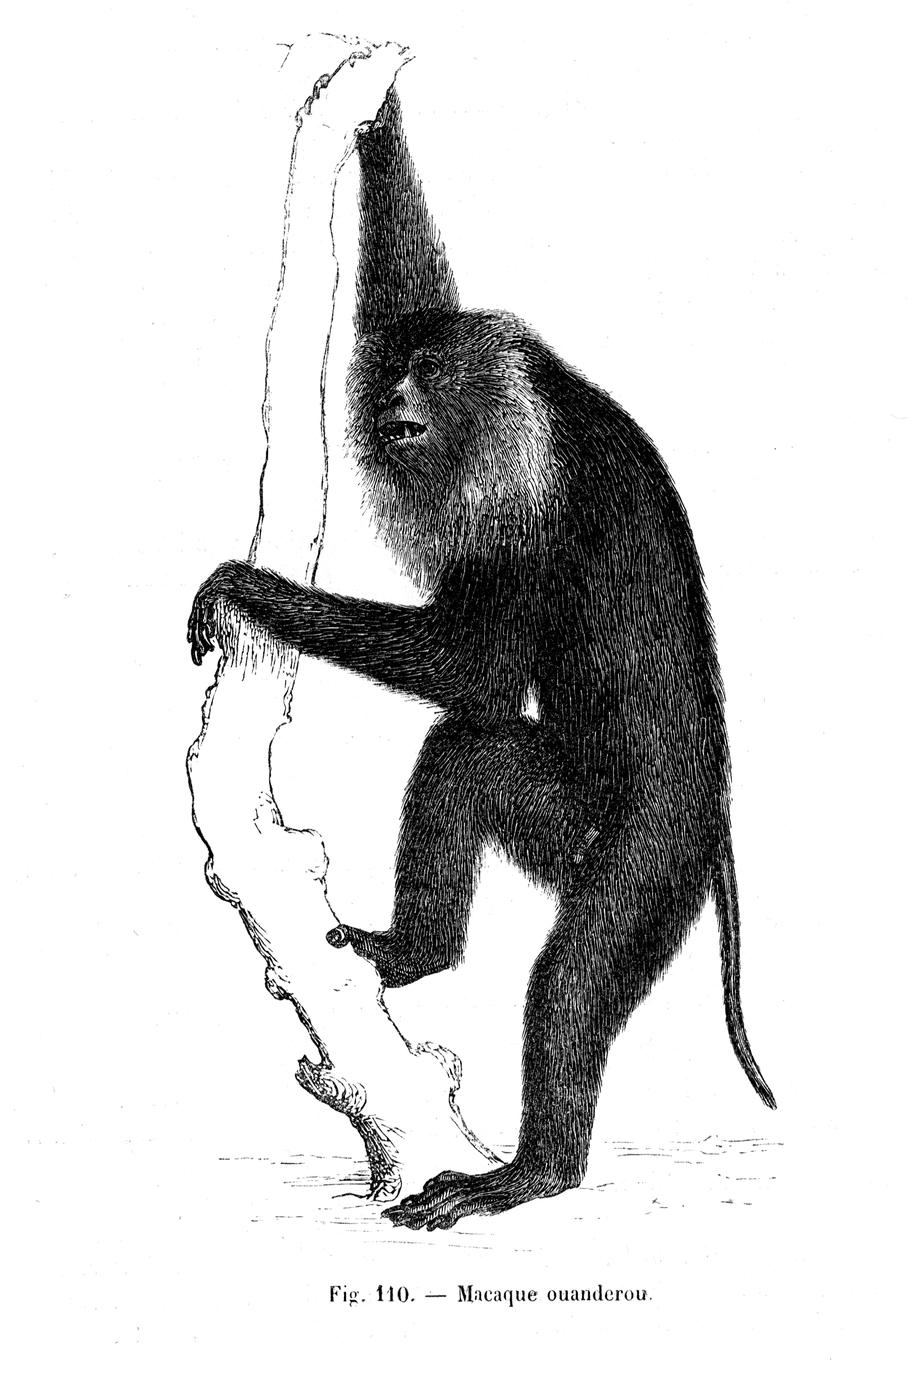 Macaque ouanderou